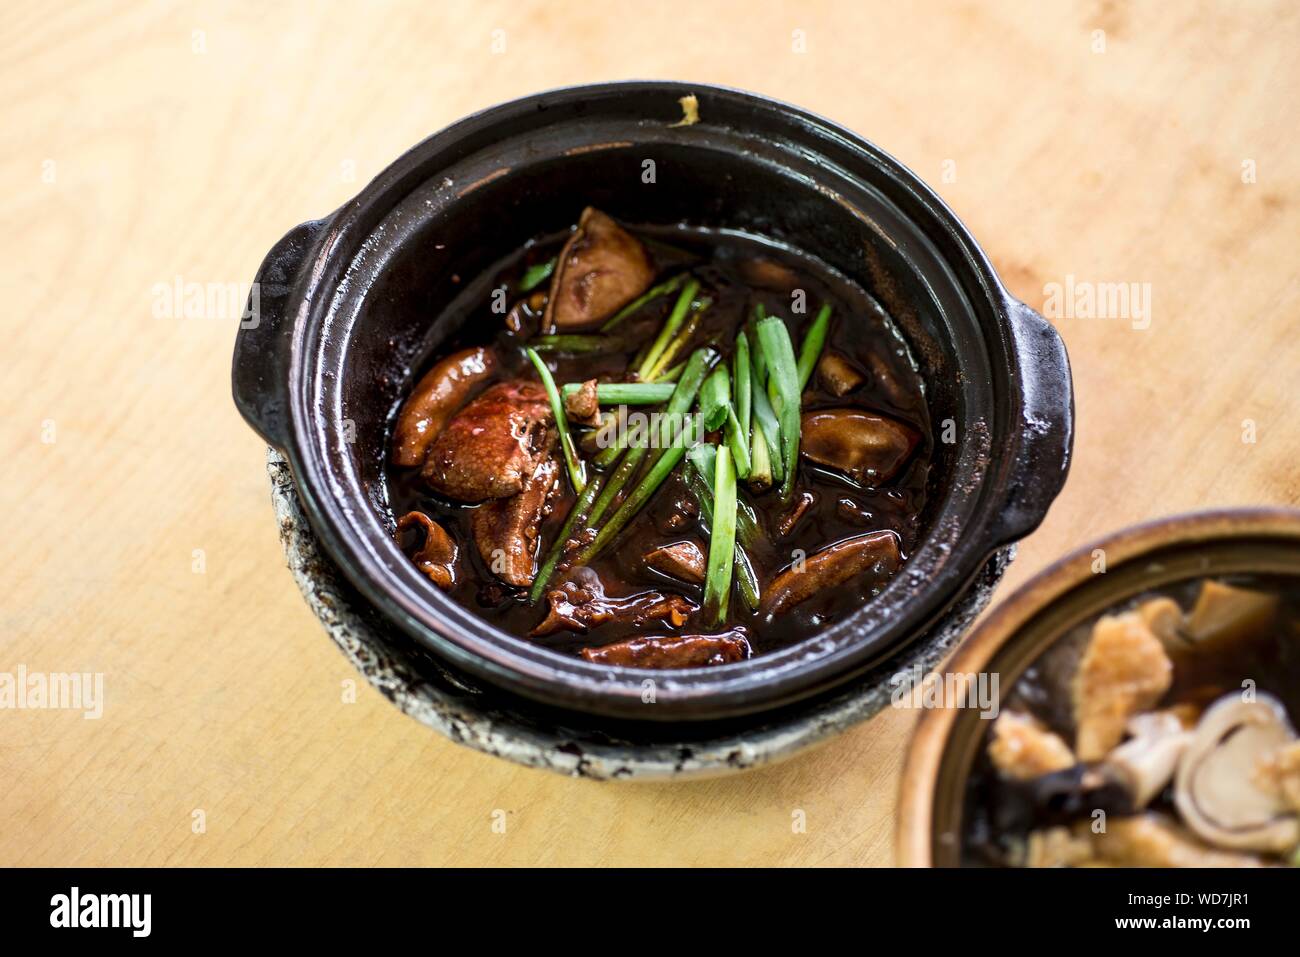 Portrait de foie servi en pot de terre cuite sur la table Banque D'Images